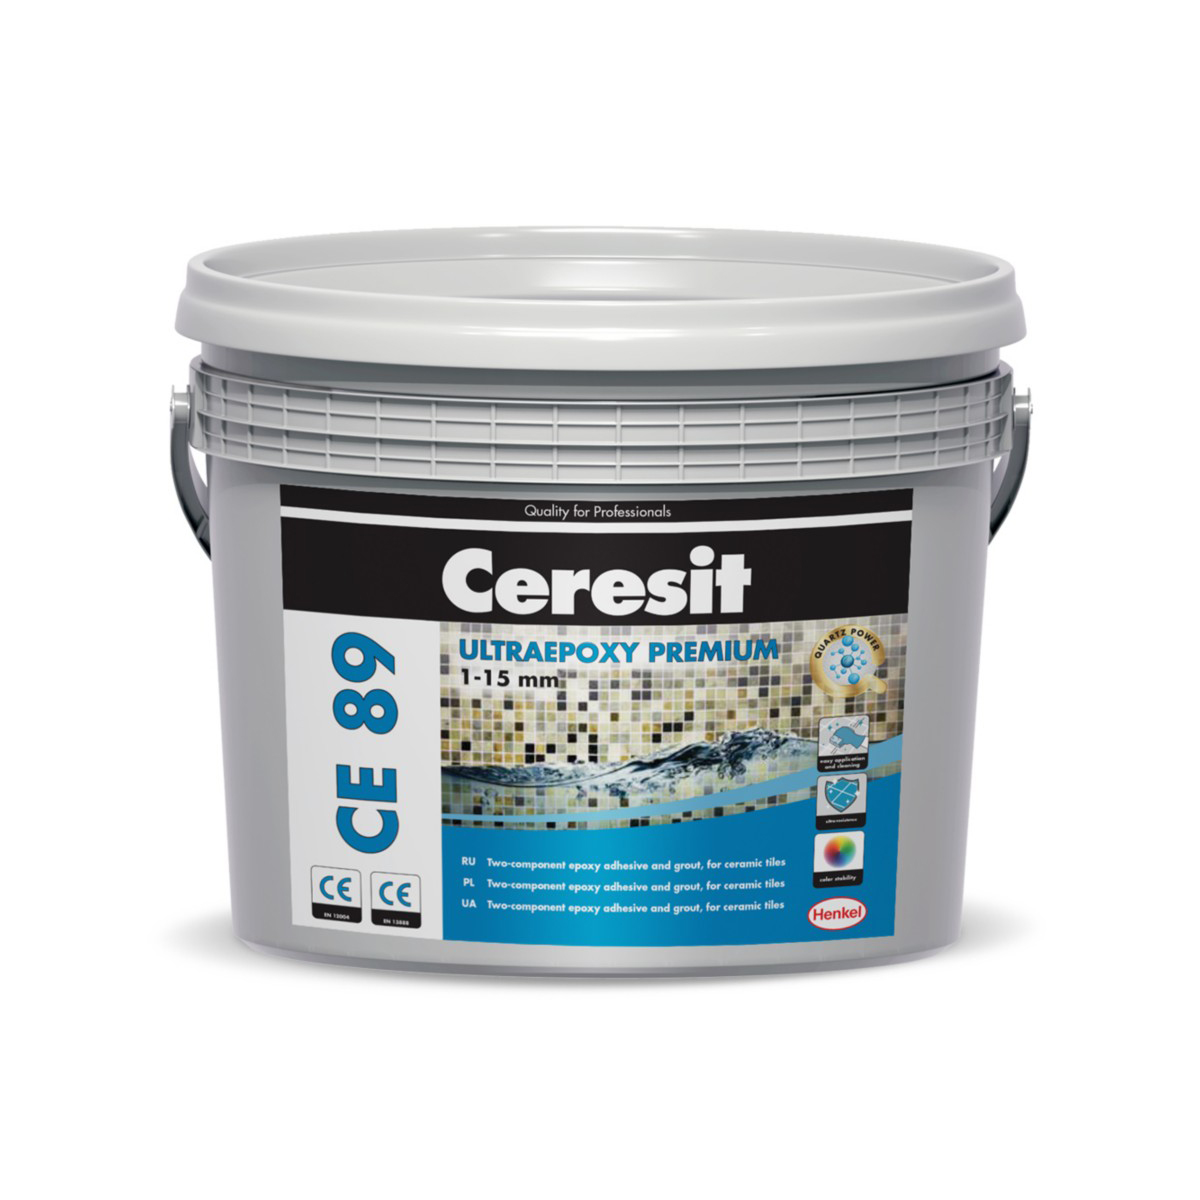 Затирка Ceresit CE 89 Ultraepoxy premium №807, жемчужно-серая, 2,5 кг